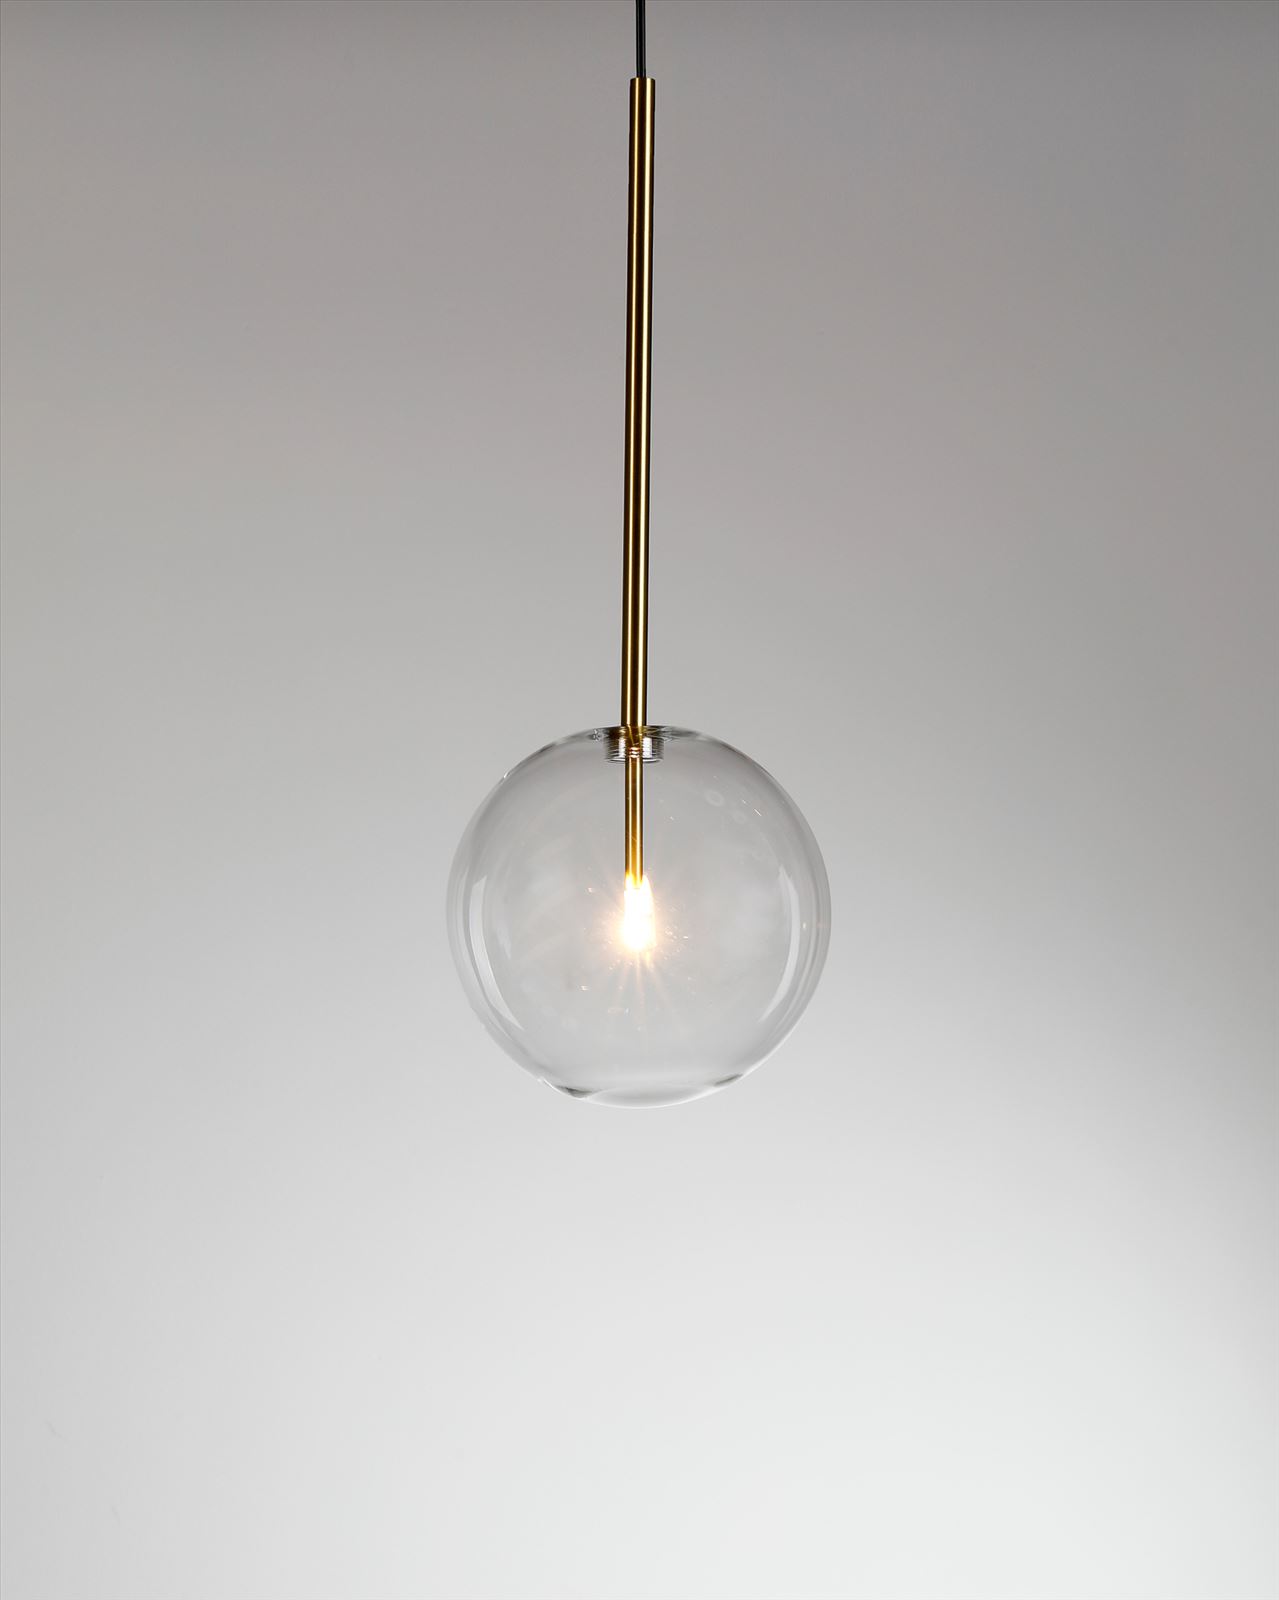 גופי תאורה בקטגוריית: מנורות תלויות ,שם המוצר: BOLSTER 